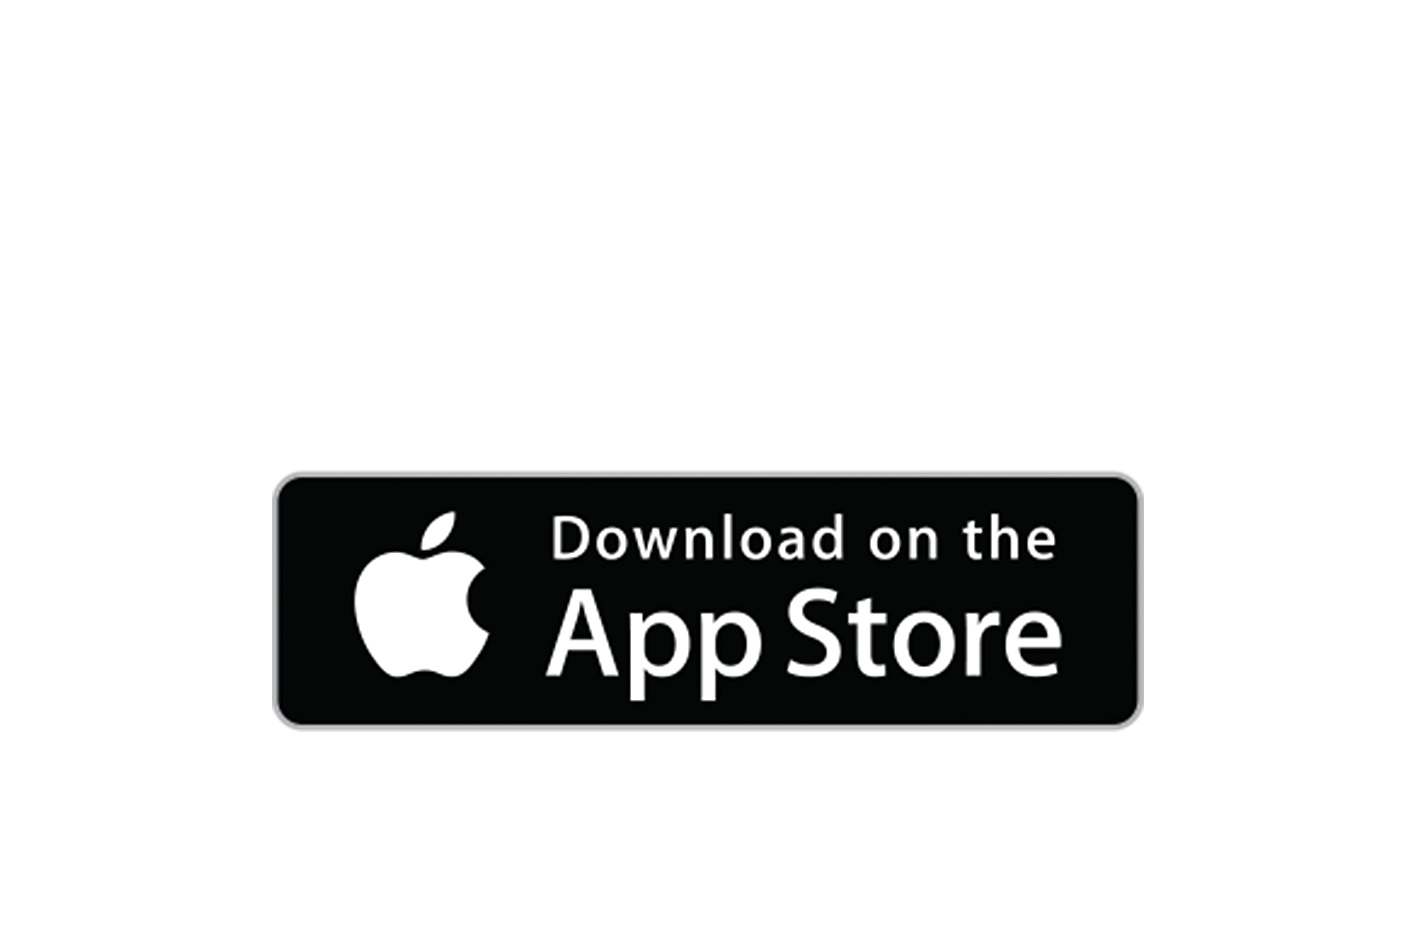 Hình ảnh logo Apple App Store